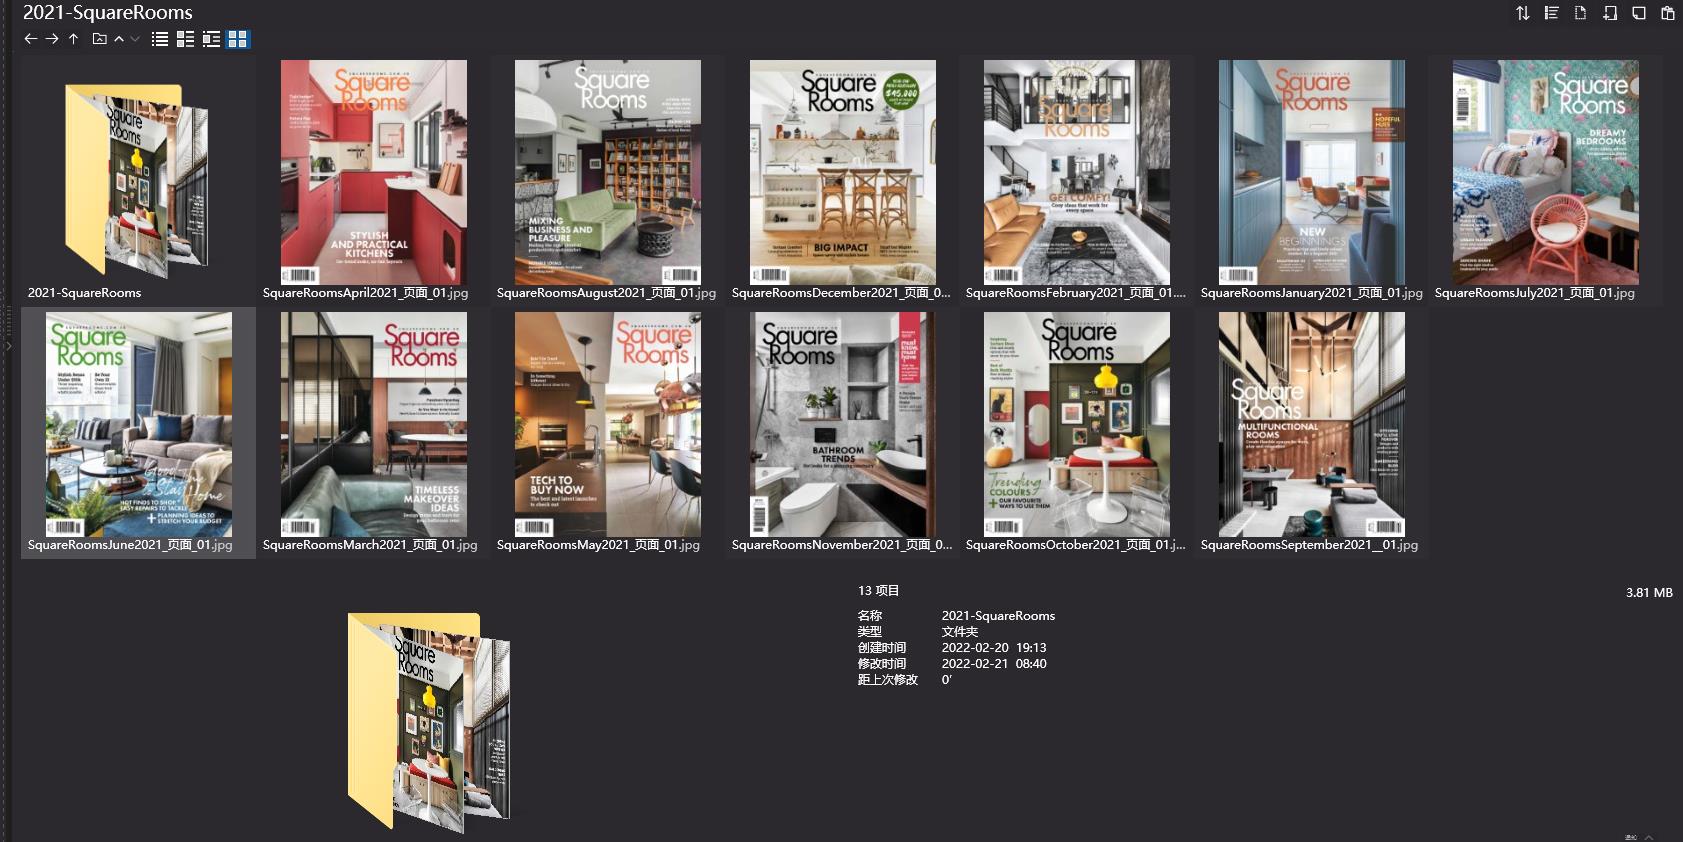 Square Rooms,Square Rooms杂志,室内设计电子杂志,杂志下载,Square Rooms杂志合集